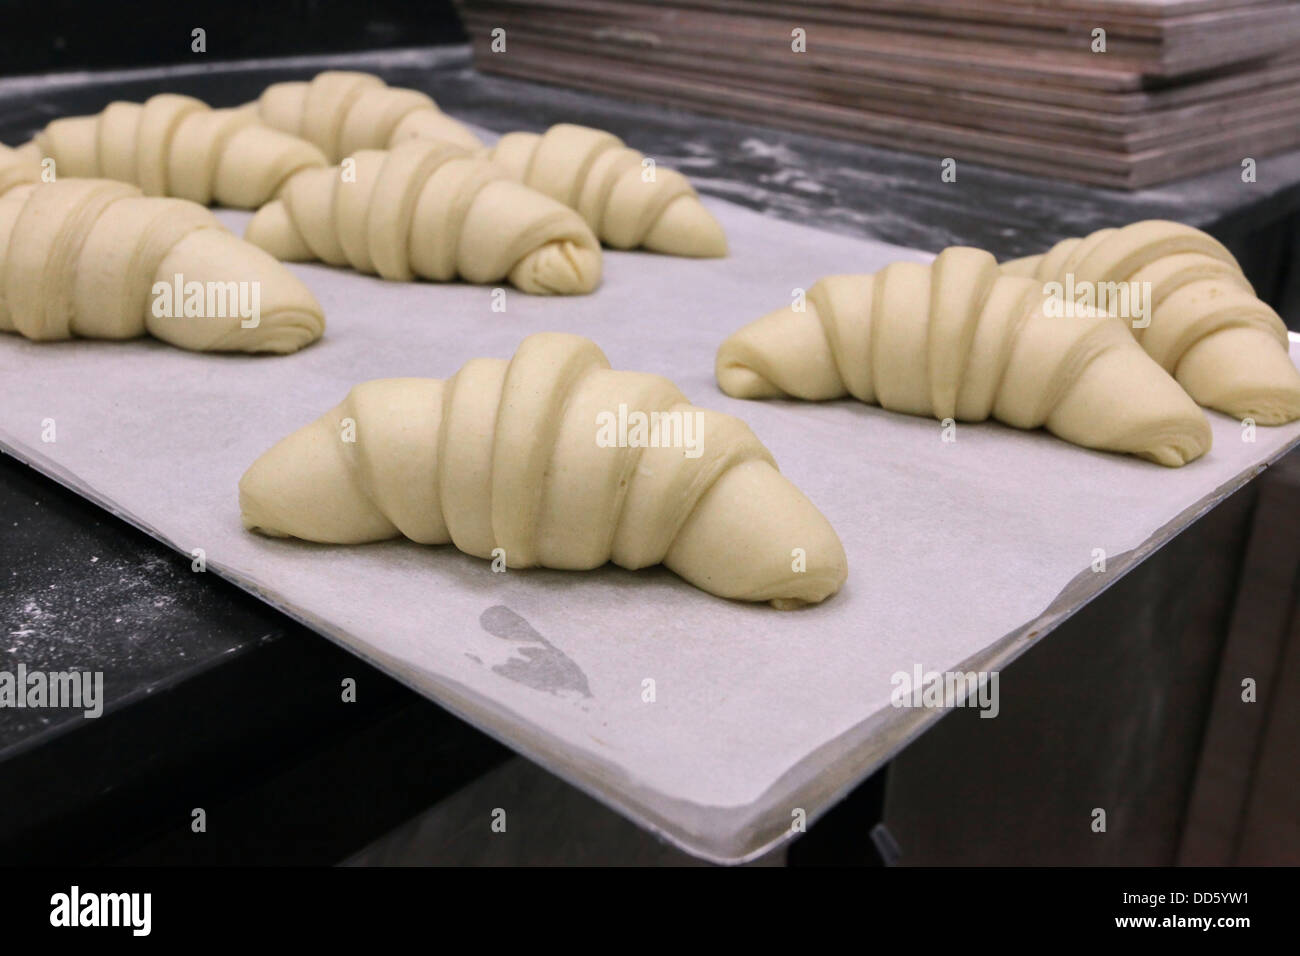 La préparation des croissants dans une boulangerie fabriqués à partir de pâte feuilletée Banque D'Images